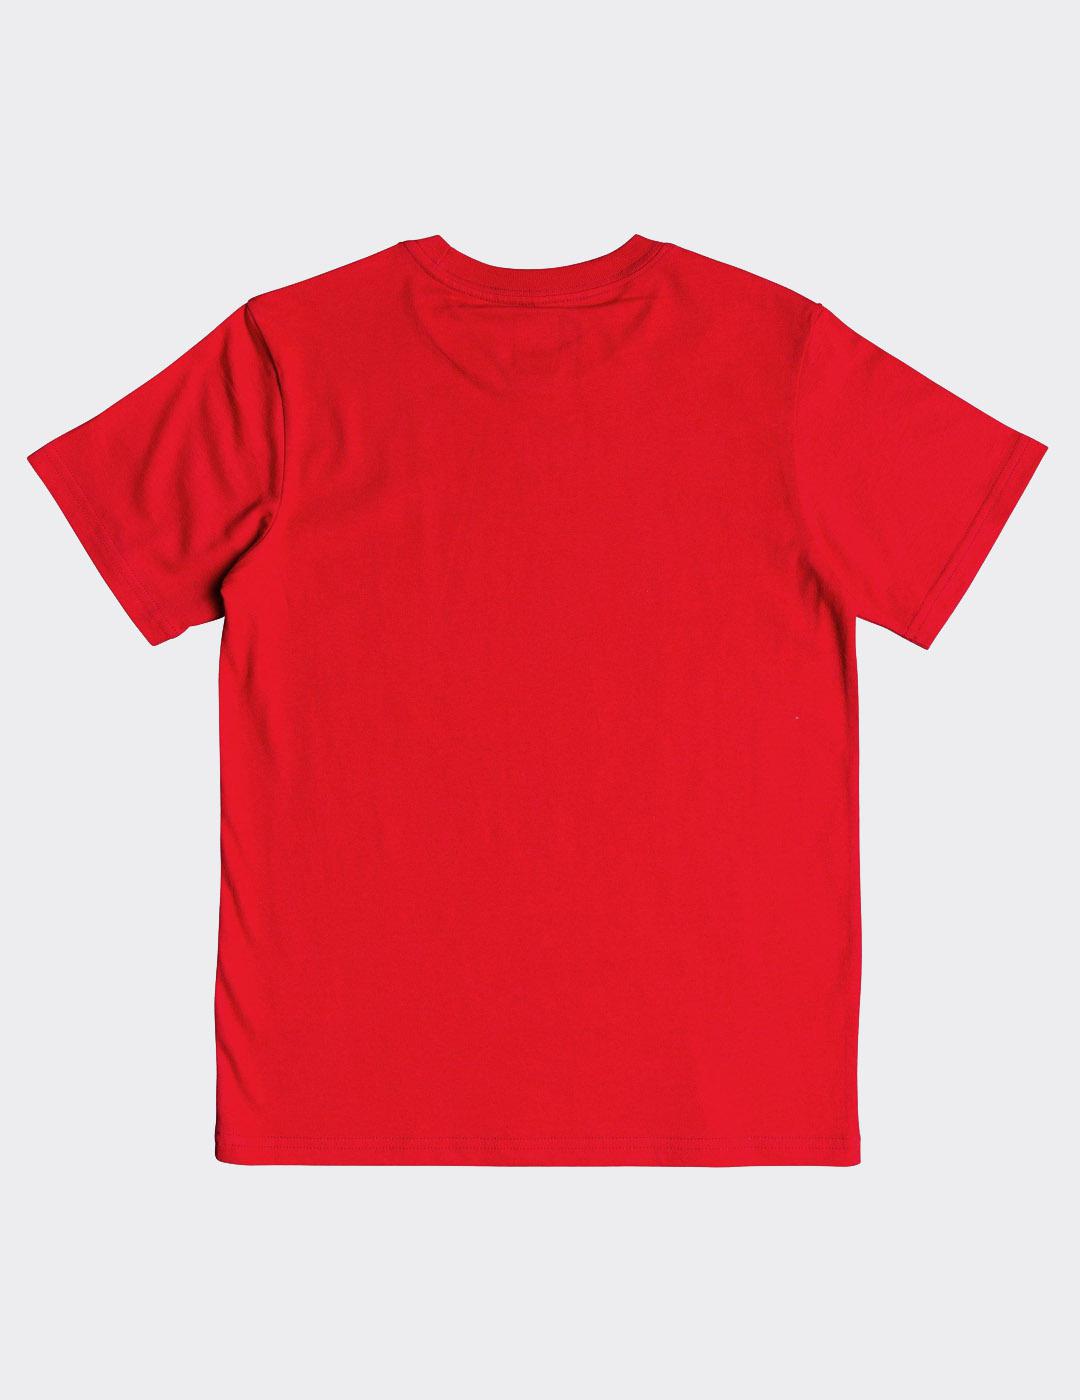 Camiseta DCshoes JR CIRCLE STAR - RED